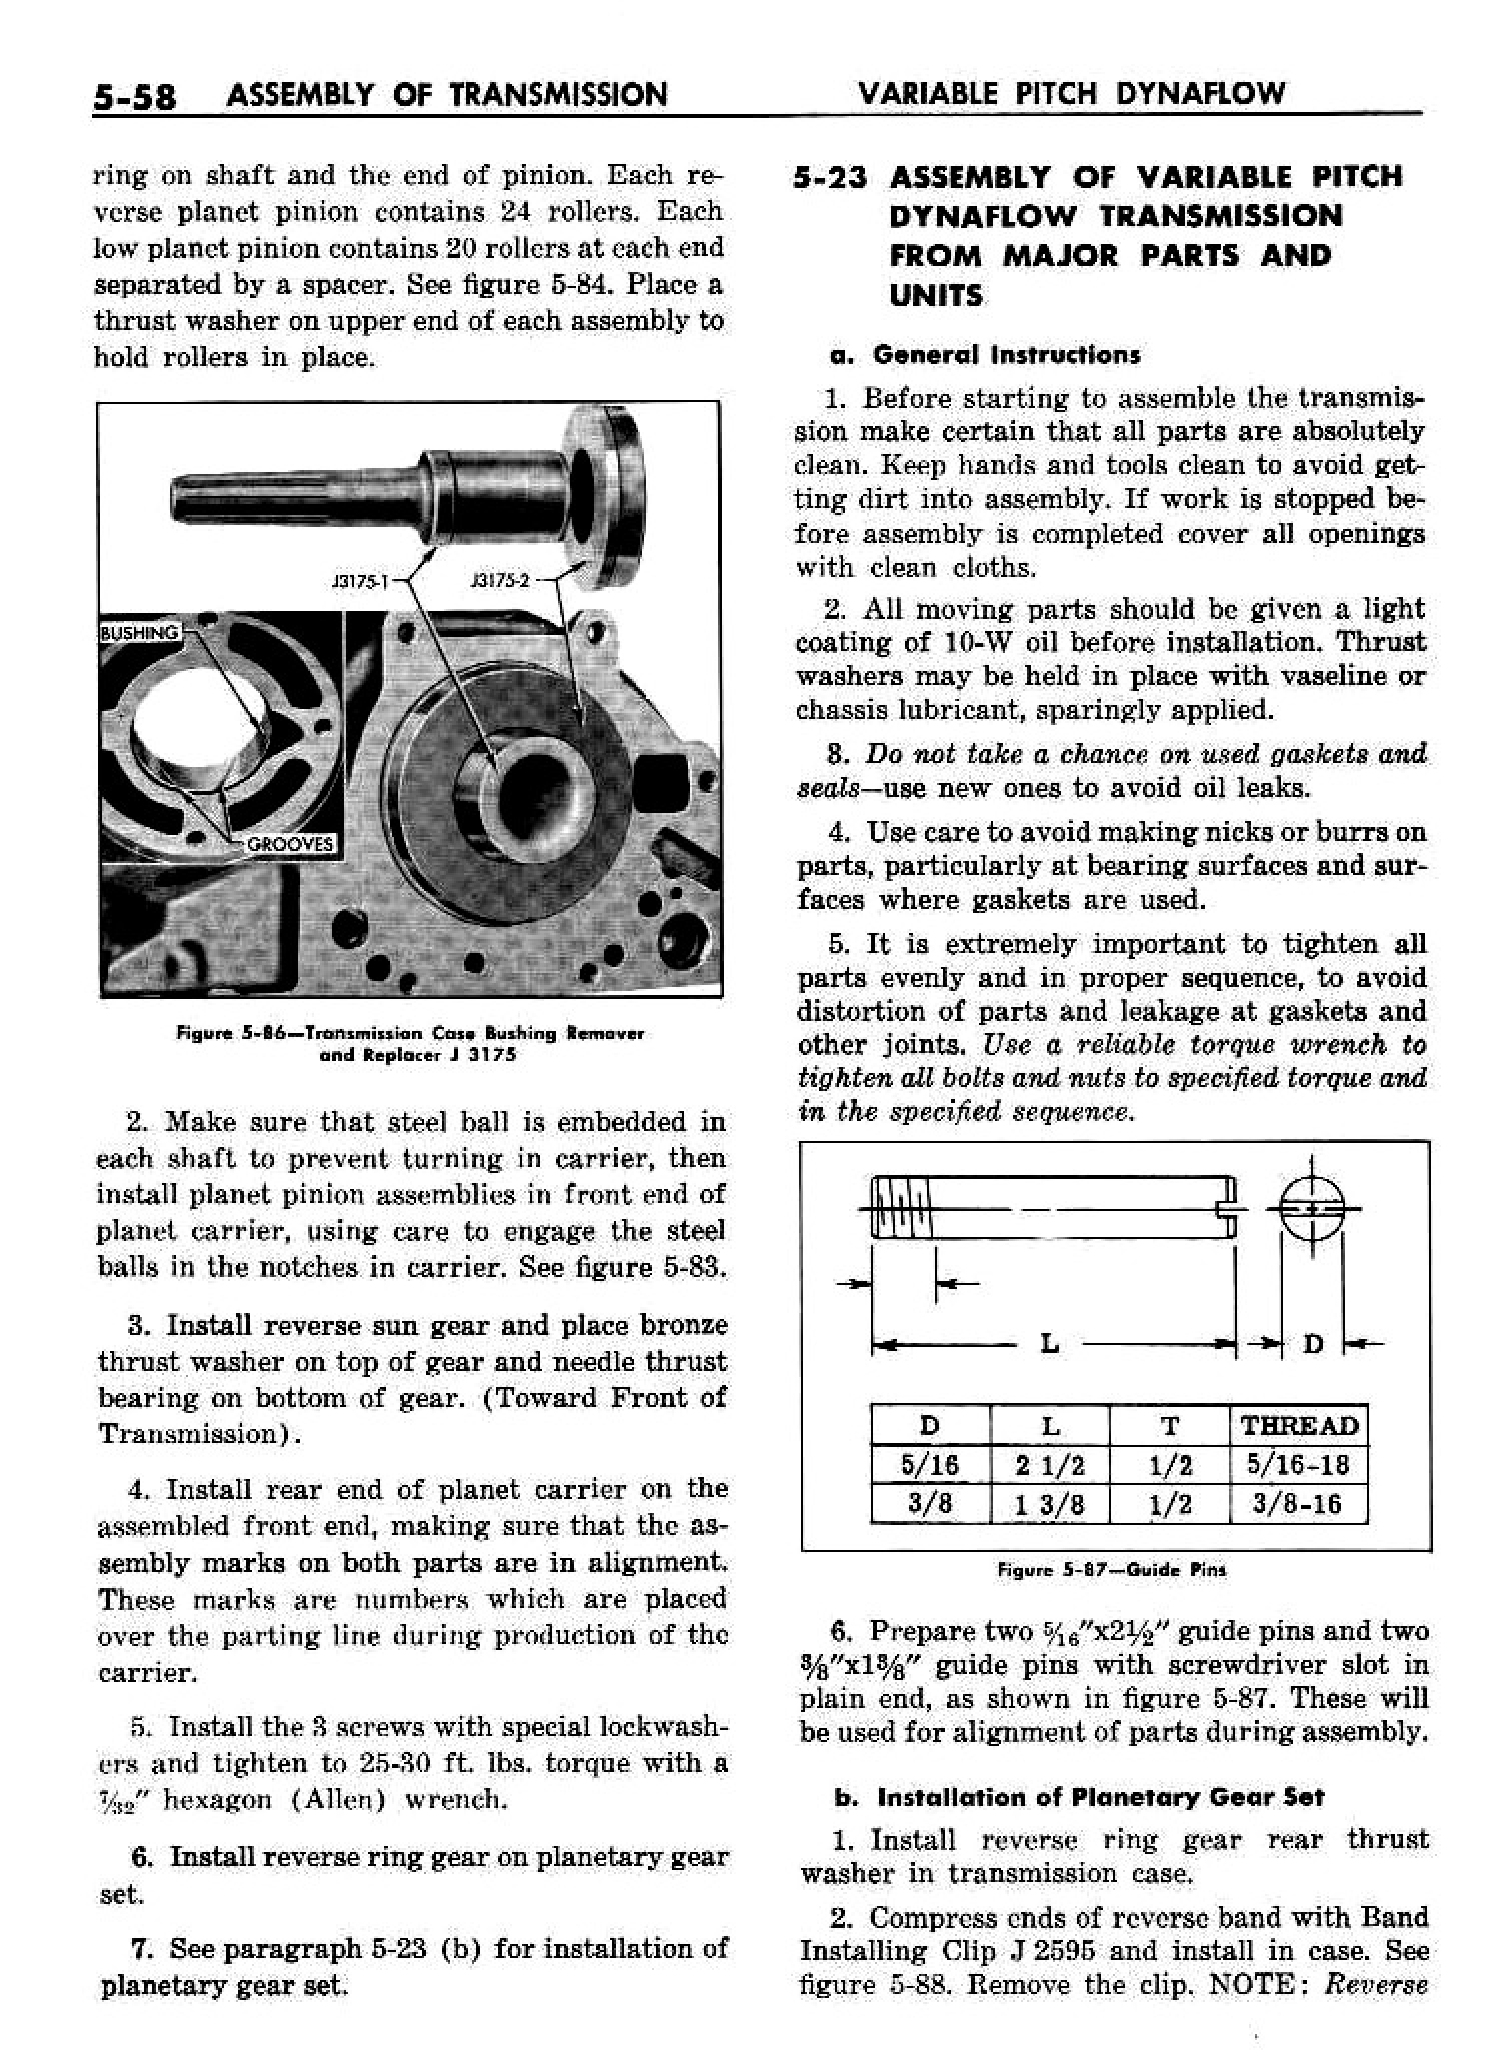 n_06 1958 Buick Shop Manual - Dynaflow_58.jpg